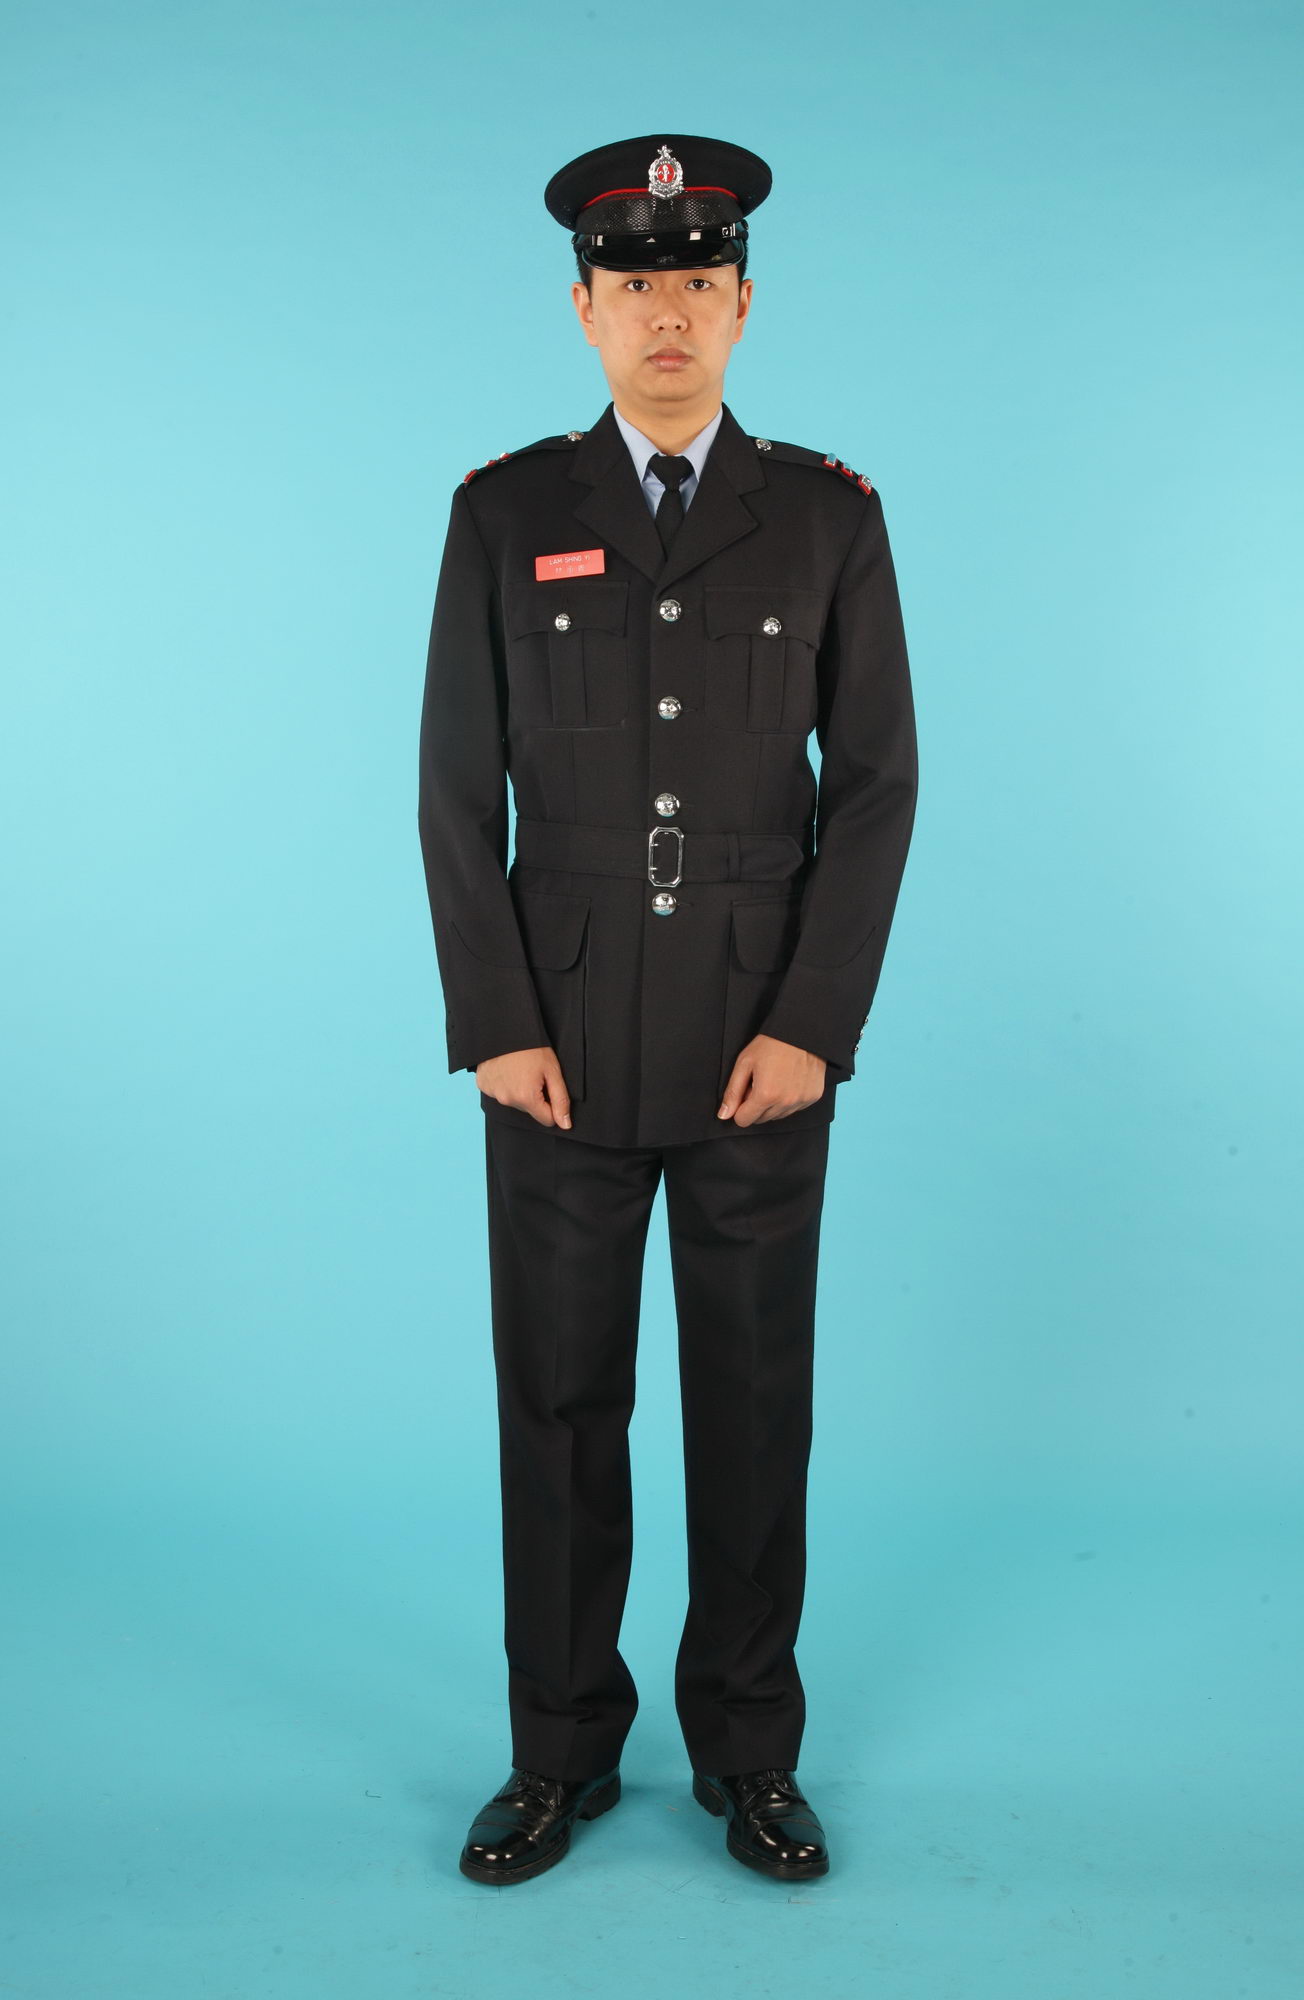 fire man uniform